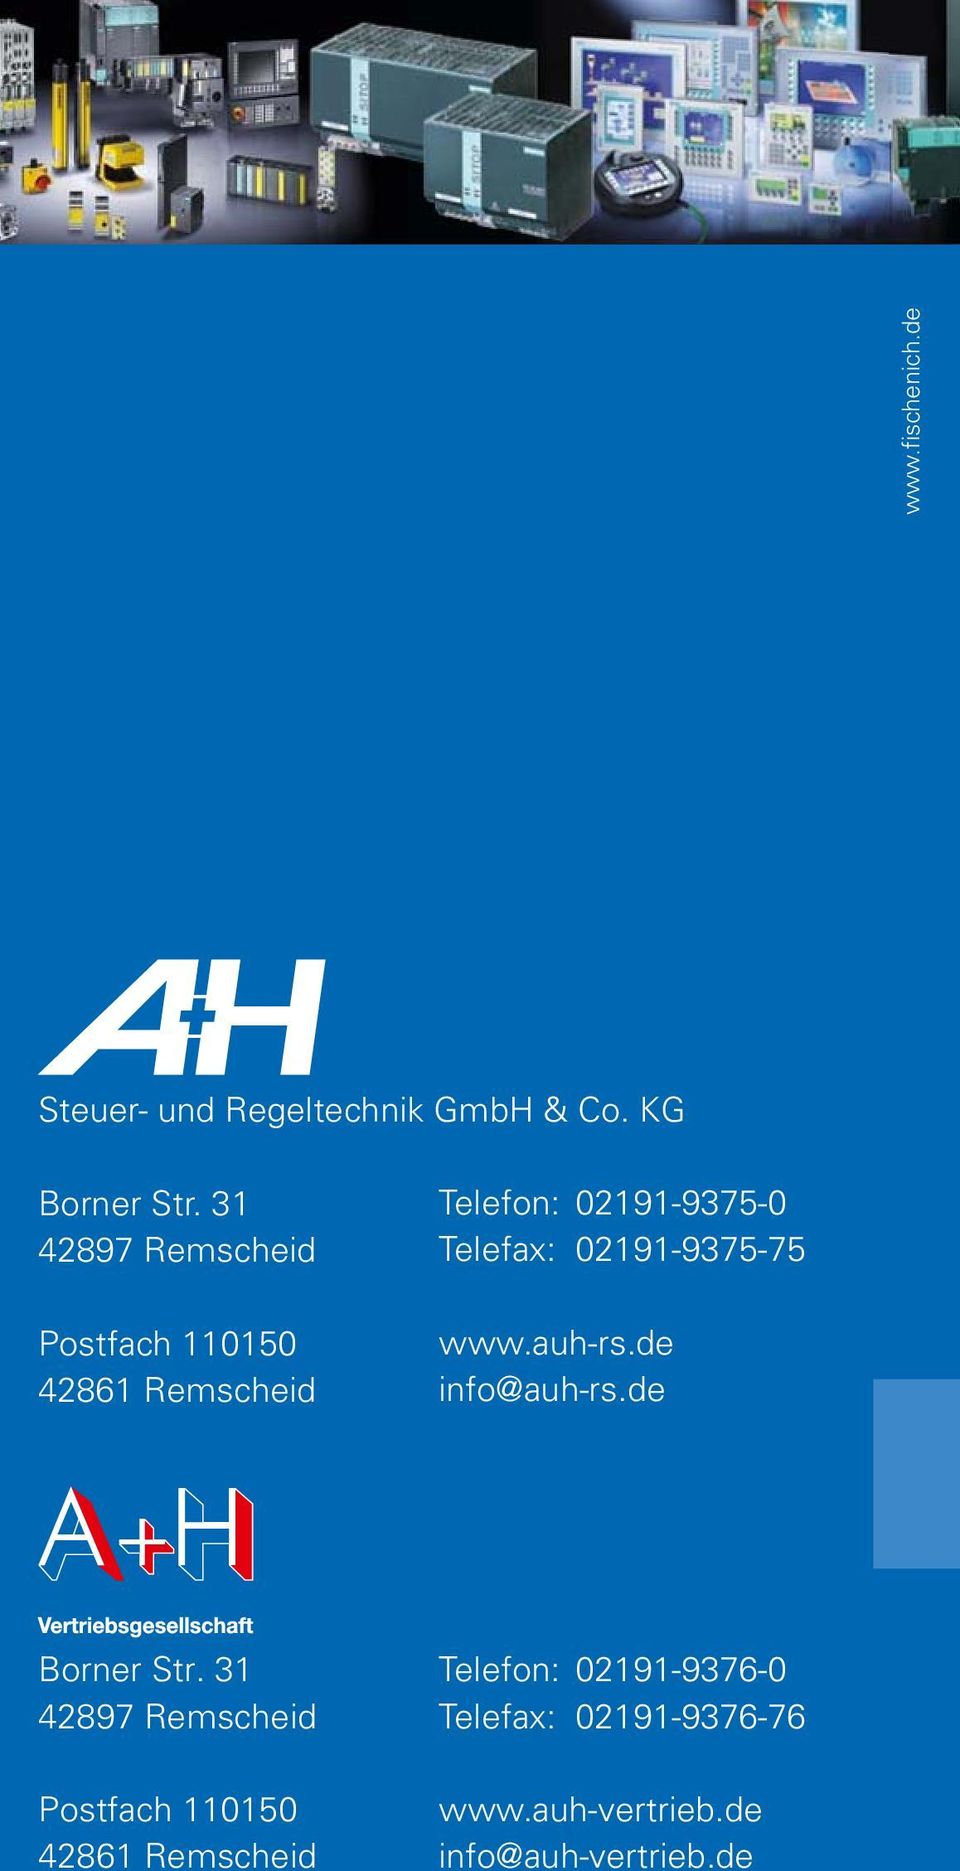 02191-9375-75 www.auh-rs.de info@auh-rs.de Borner Str.